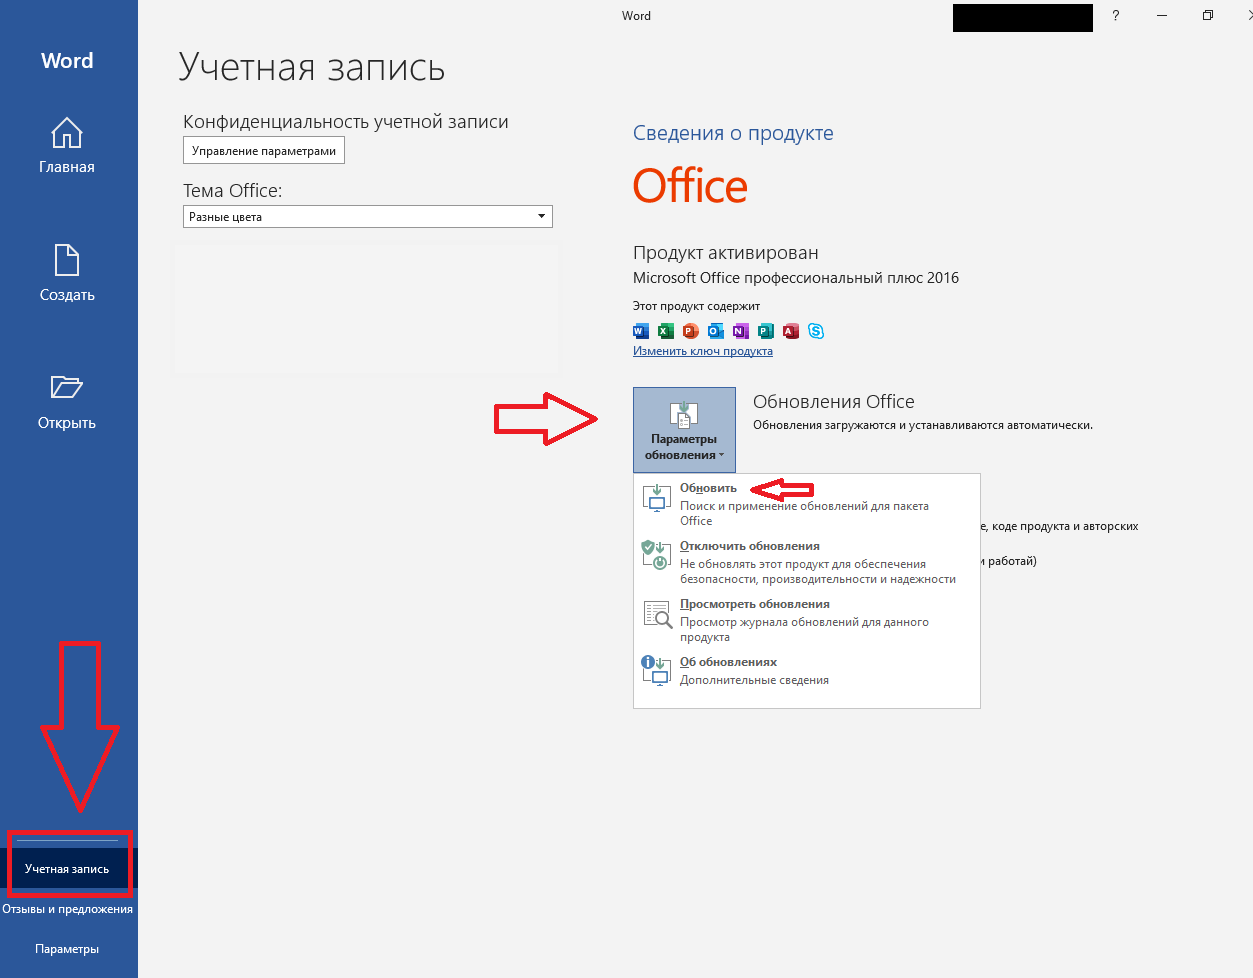 Телеграмм стал на английском языке. Изменить язык интерфейса MS Office. Как изменить язык в Ворде на русский. Как поменять язык в Microsoft Office. Как сменить язык в офисе.